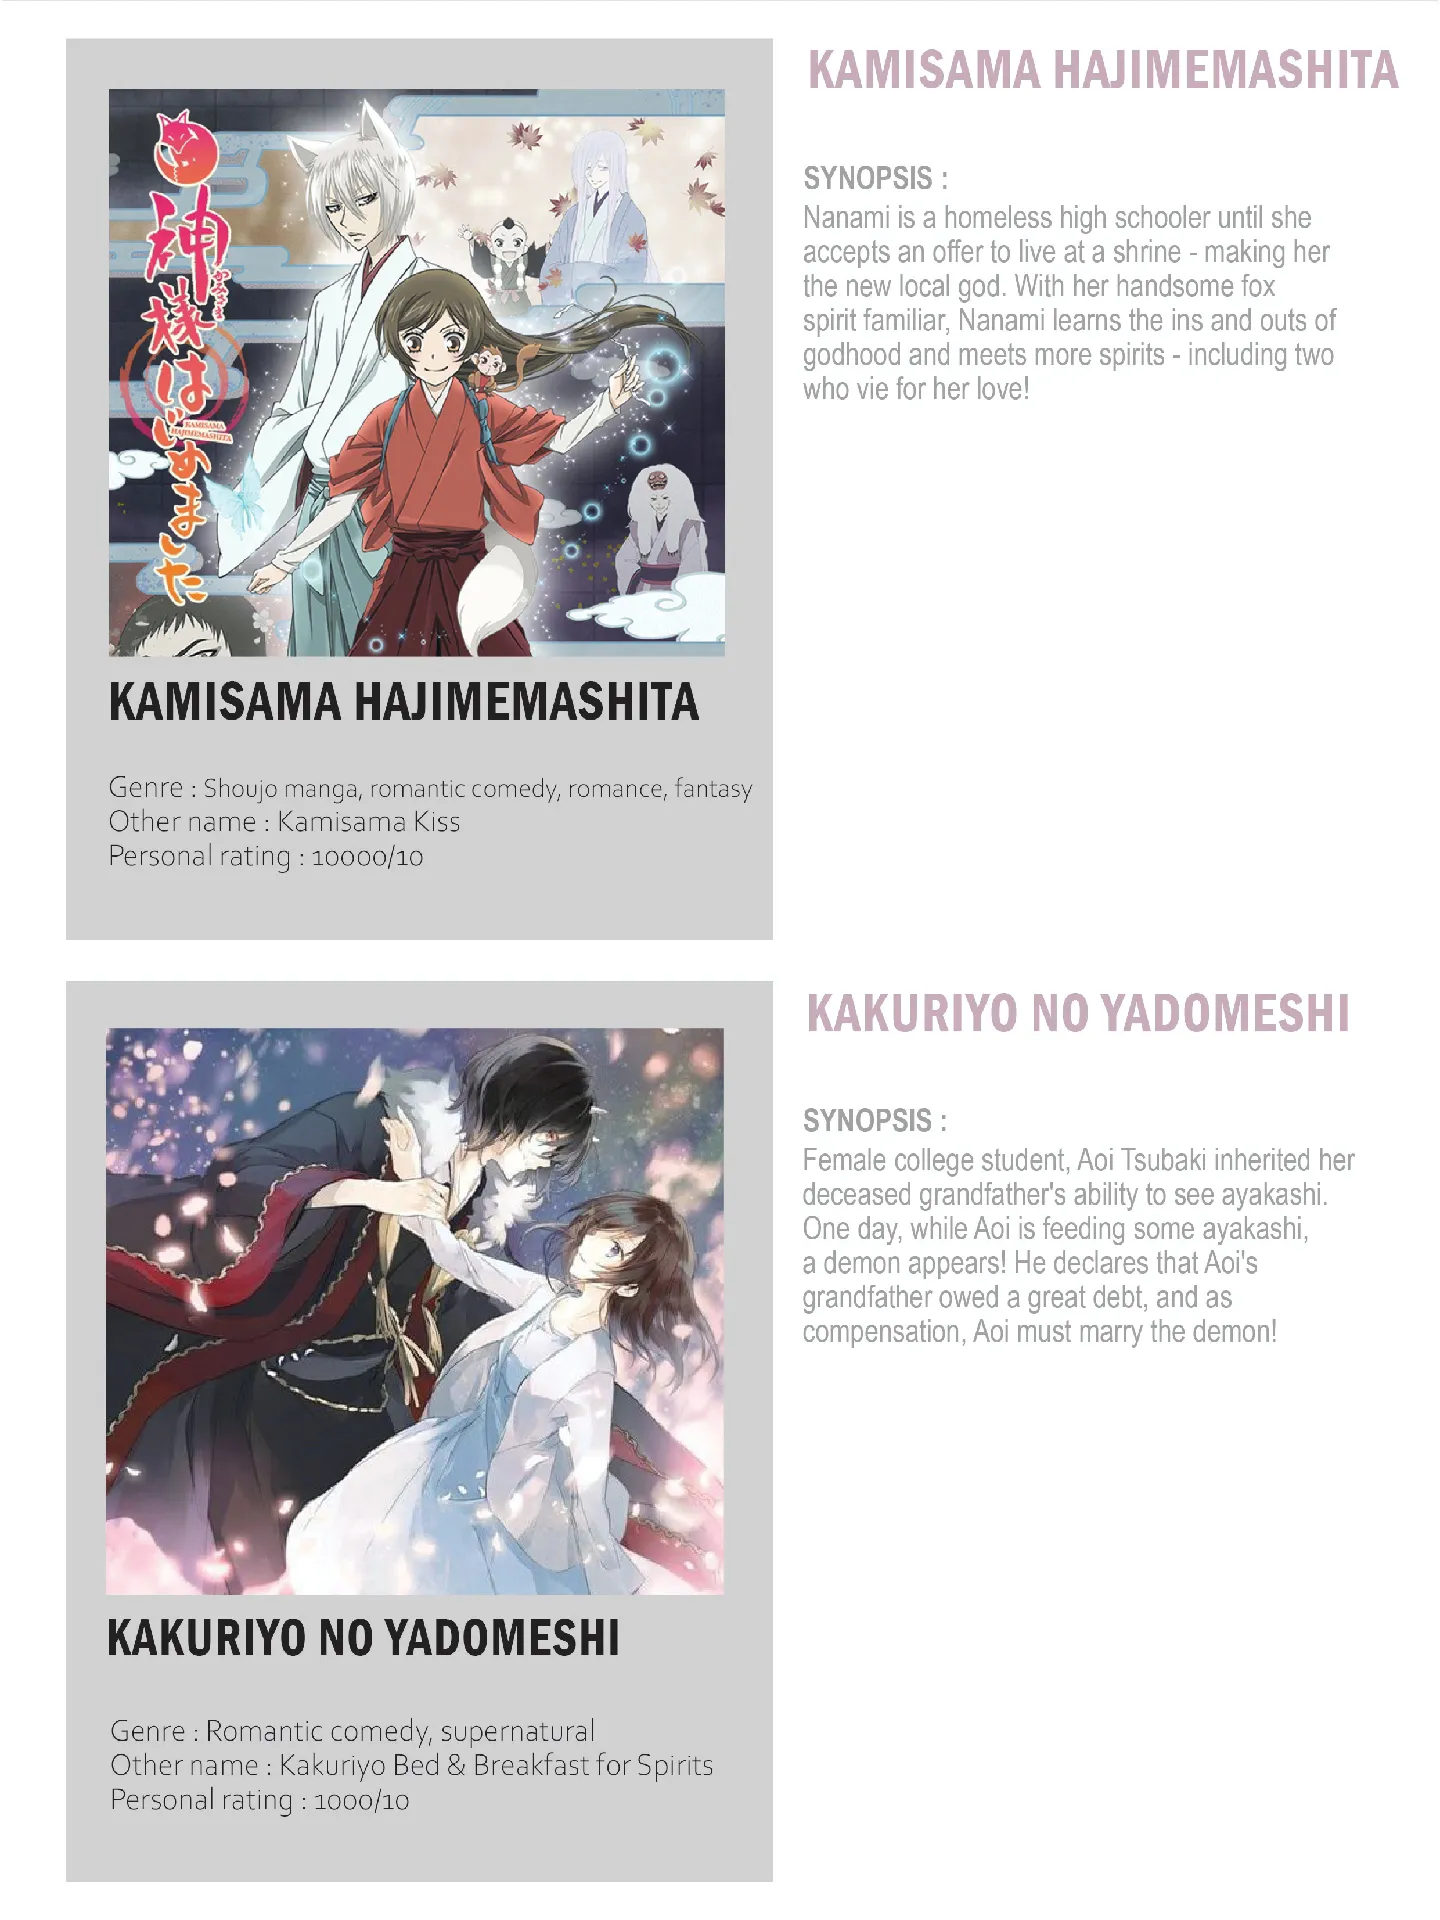 Kamisama Hajimemashita  Kamisama kiss, Anime girl cute, Anime romance